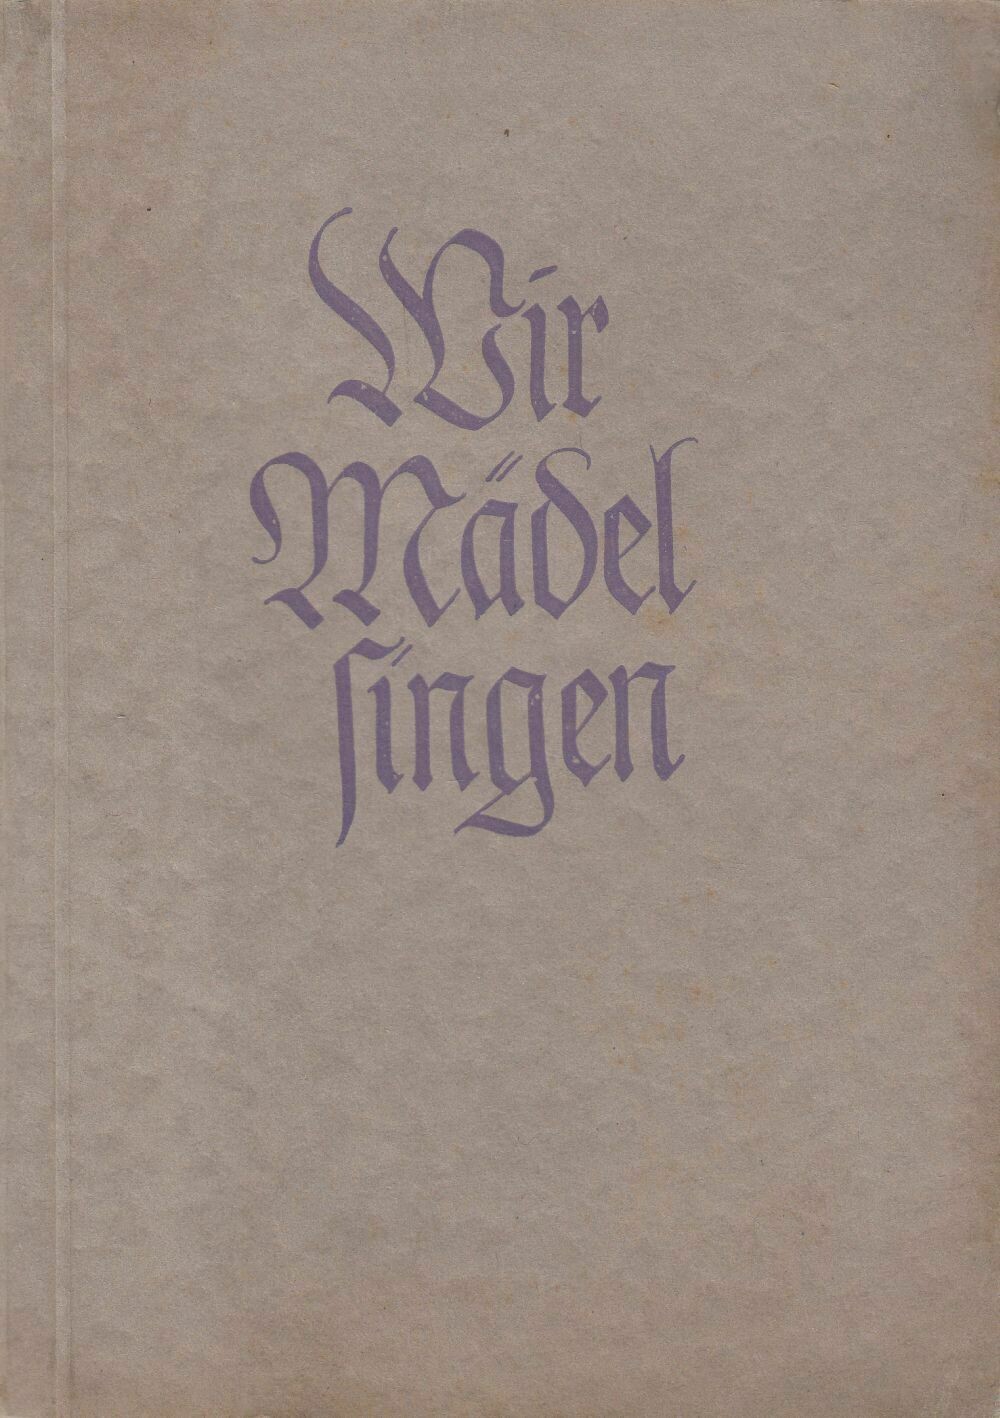 Wir Mädel singen - Broschierte Ausgabe aus 1941